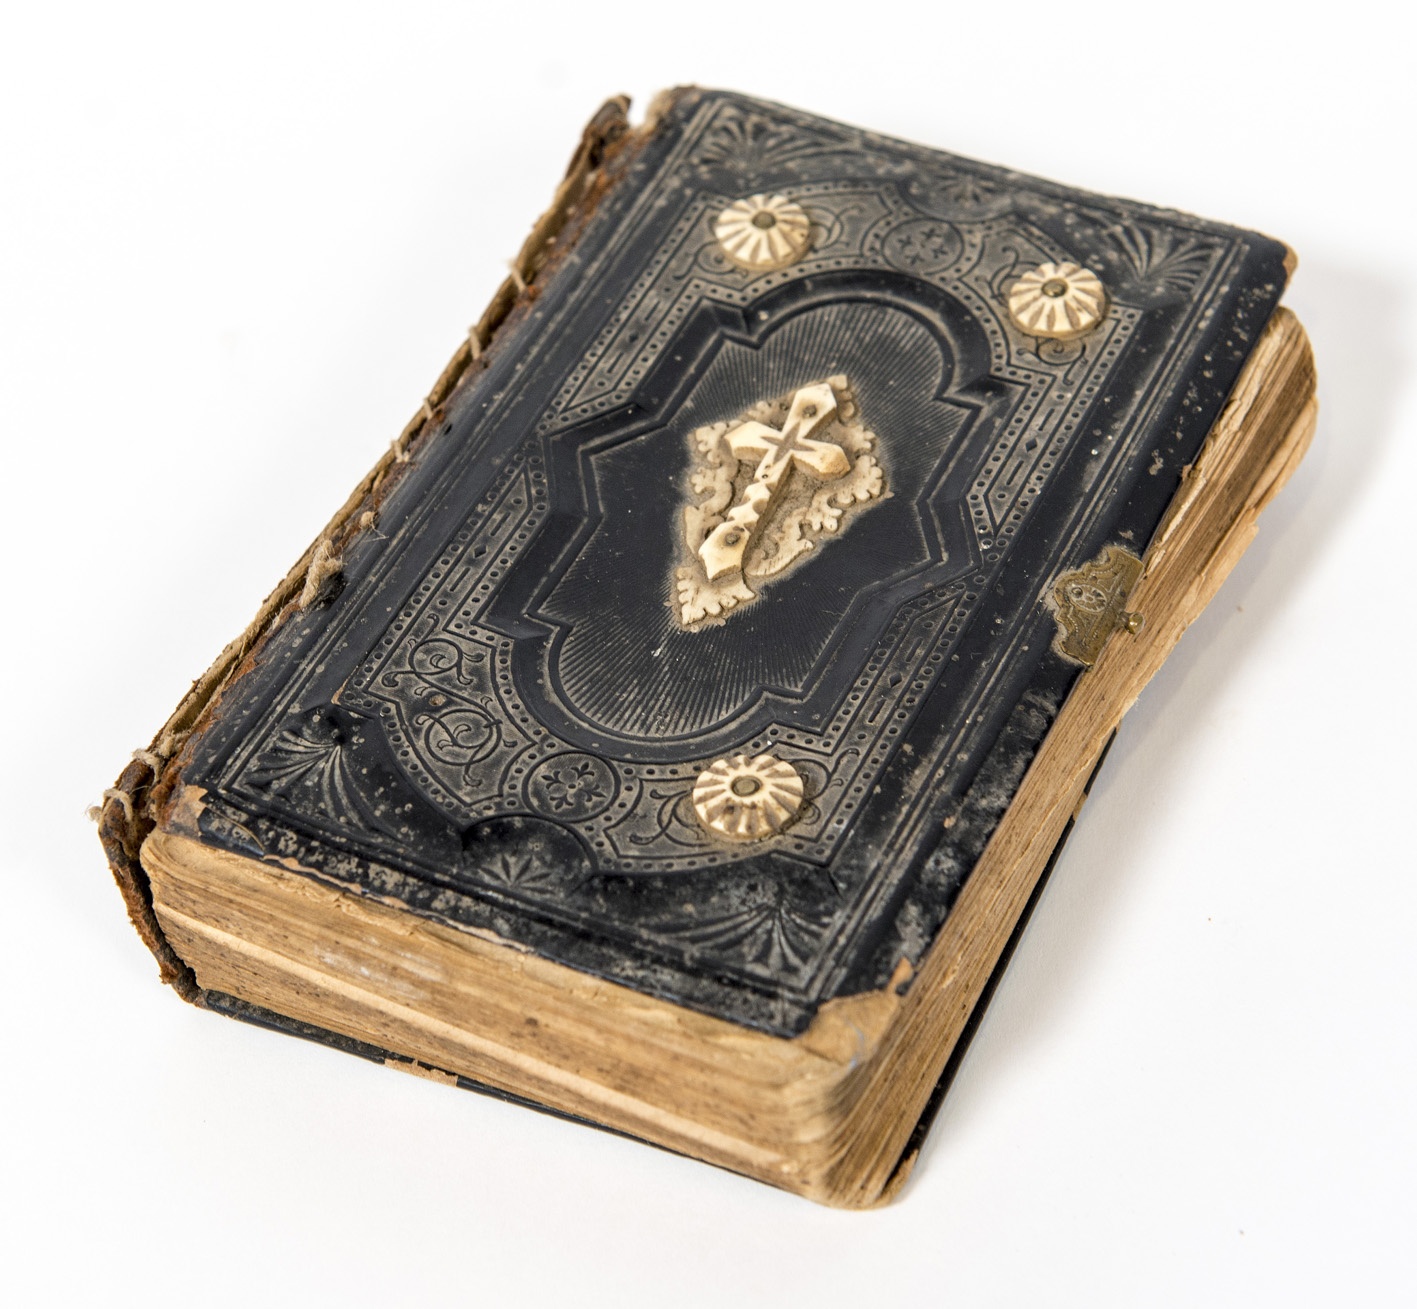 Csontdíszítésű német nyelvű imakönyv (Bakonynánai Helytörténeti Gyűjtemény CC BY-NC-SA)